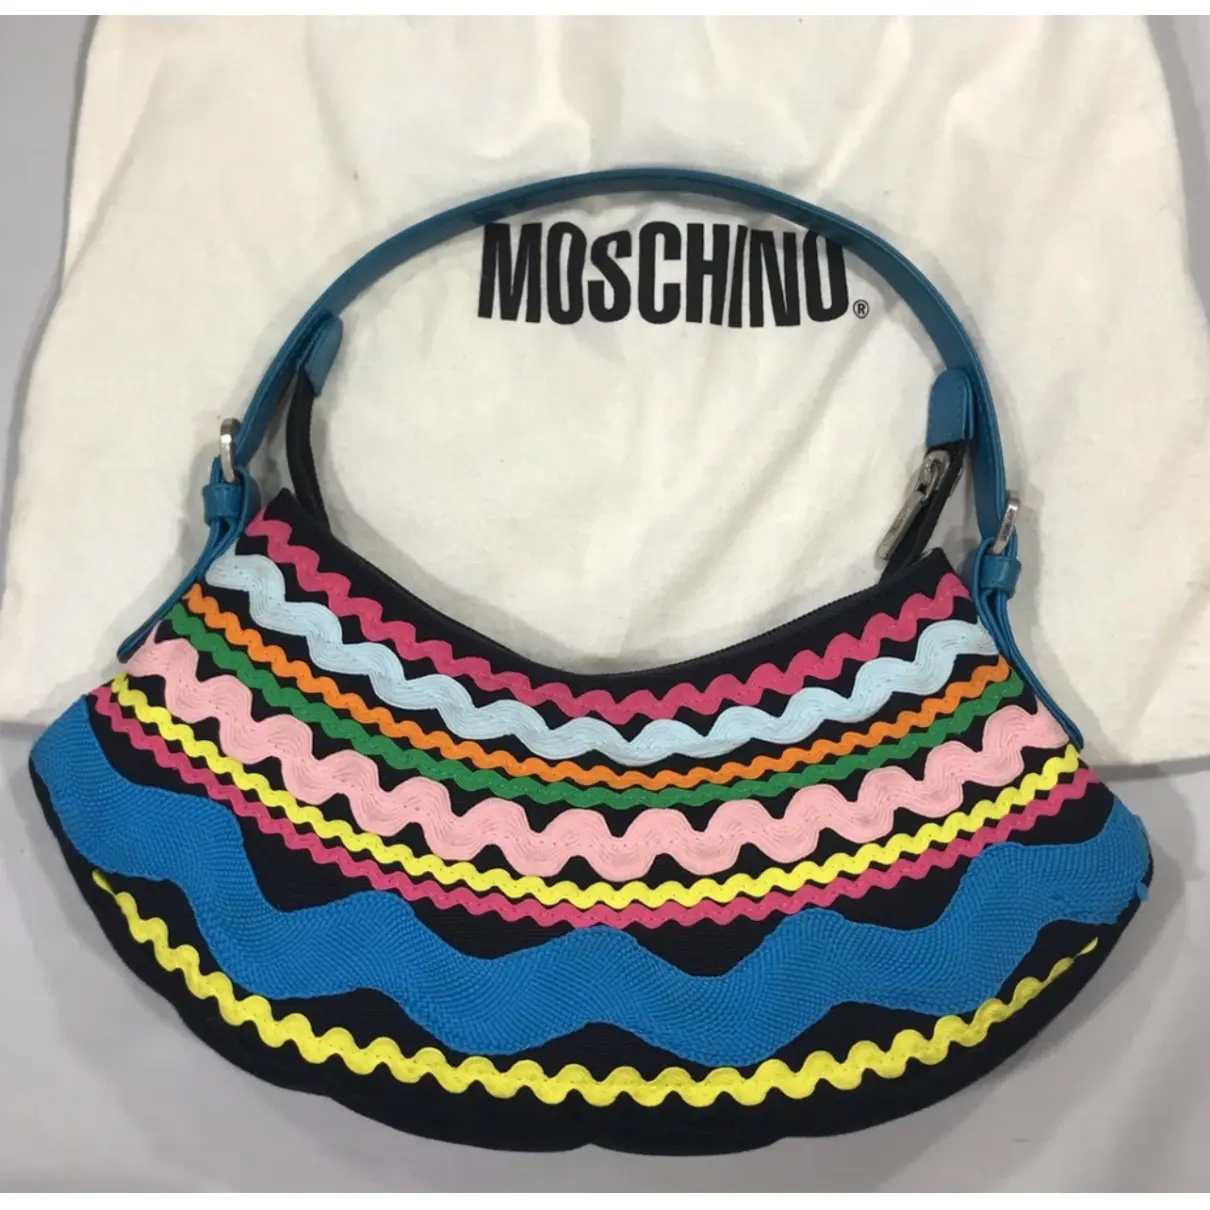 Buy Moschino Shoulder bag online